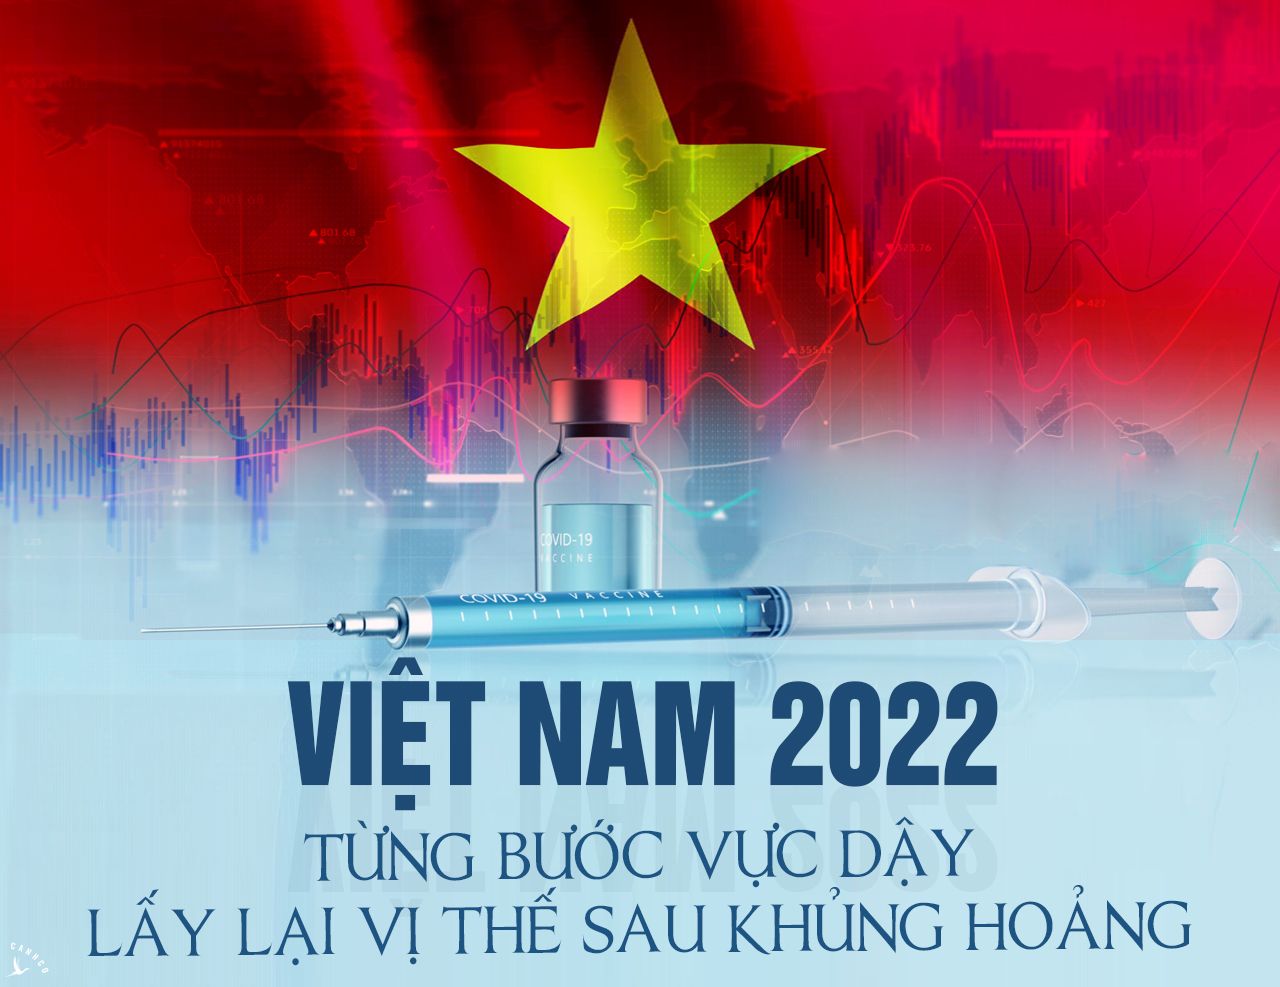 Việt Nam 2022: Từng bước vực dậy, lấy lại vị thế sau khủng hoảng